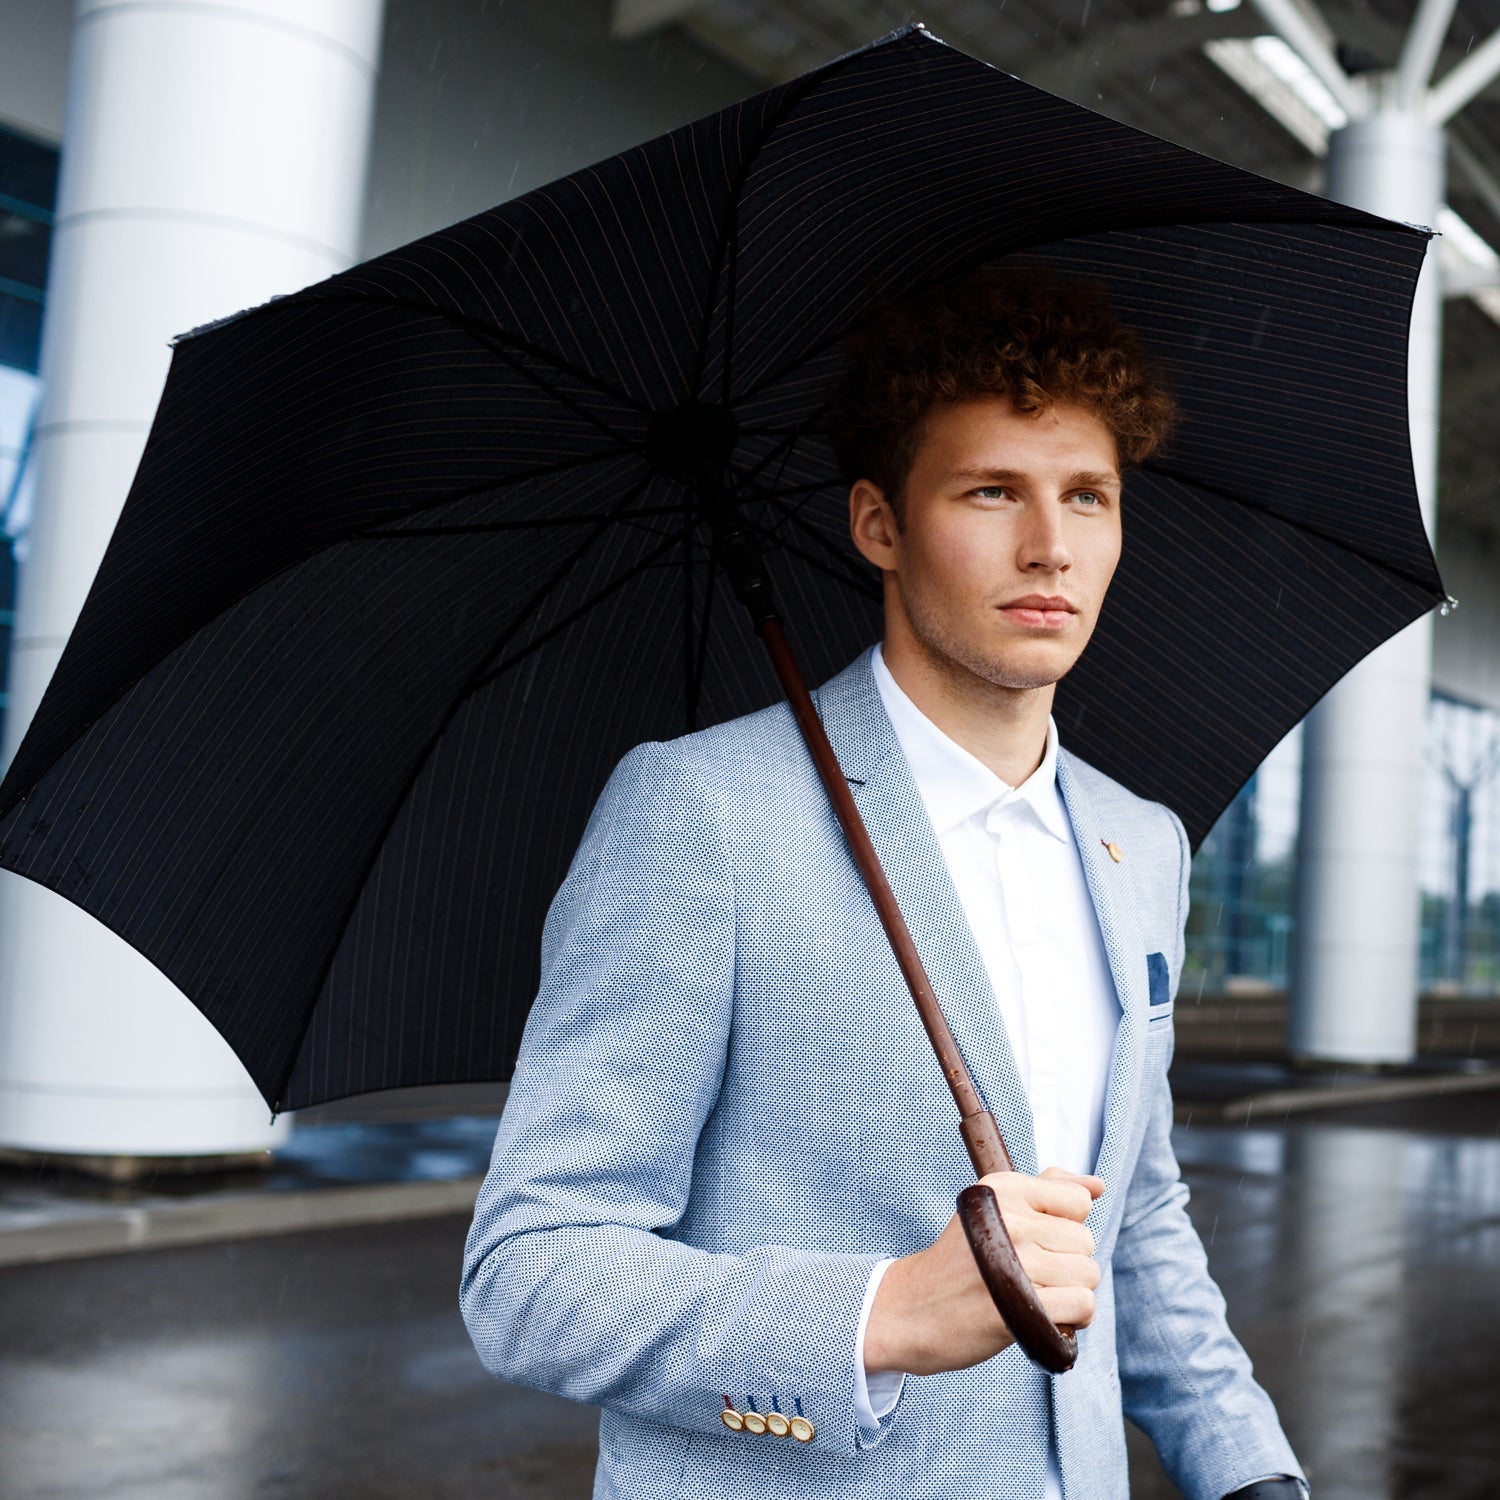 6814  Travel Inverted Umbrella Compact Windproof Umbrella Sun & Rain Umbrella for Men & Women DeoDap